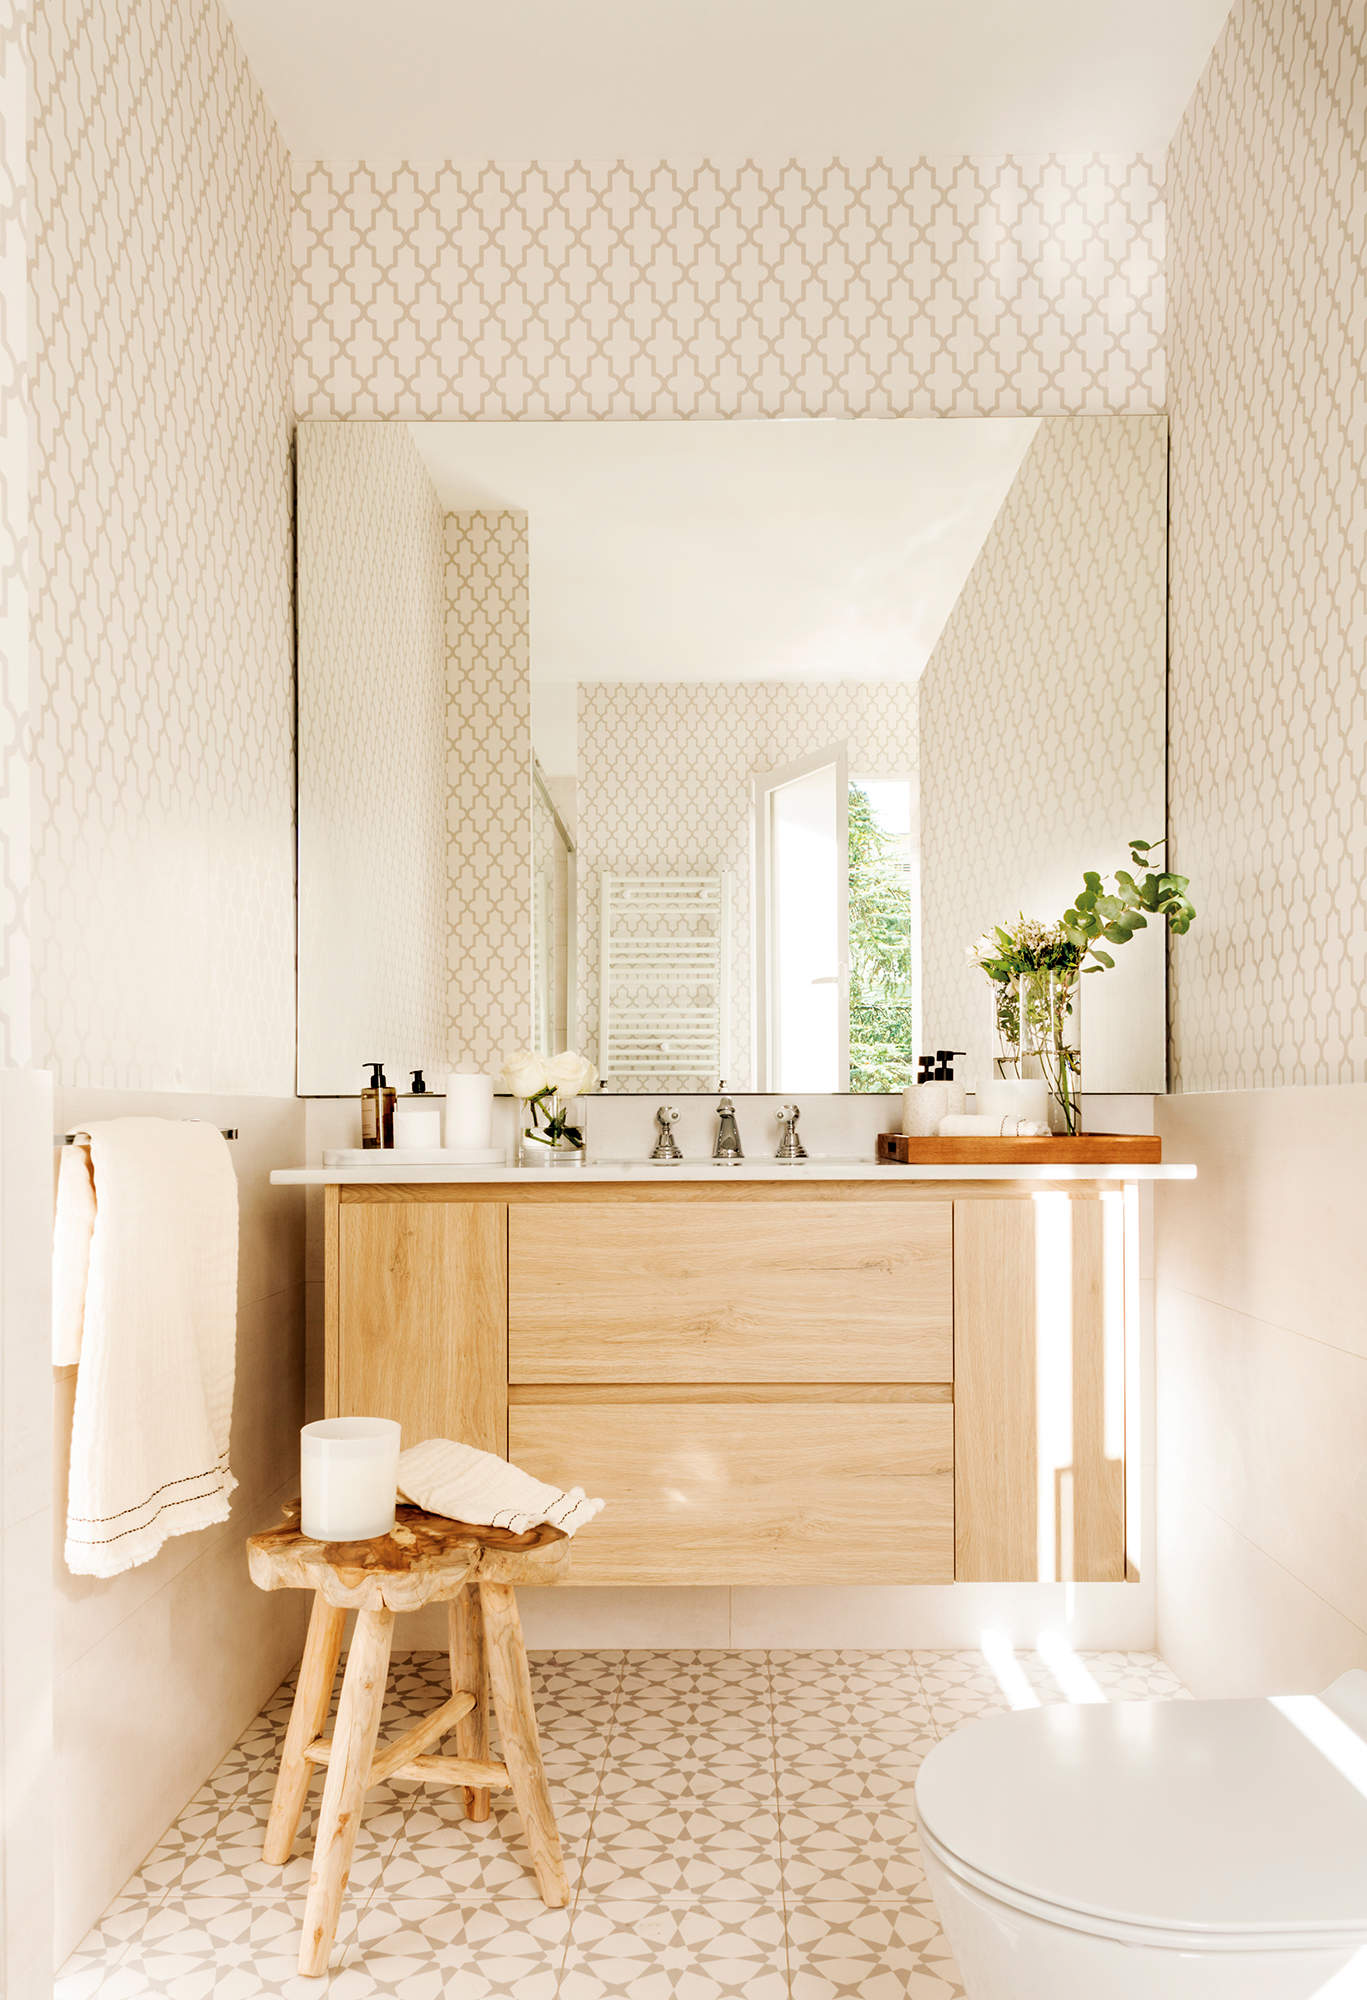 Baño con suelo hidraúlico, papel pintado, mueble volado y espejo de pared a pared